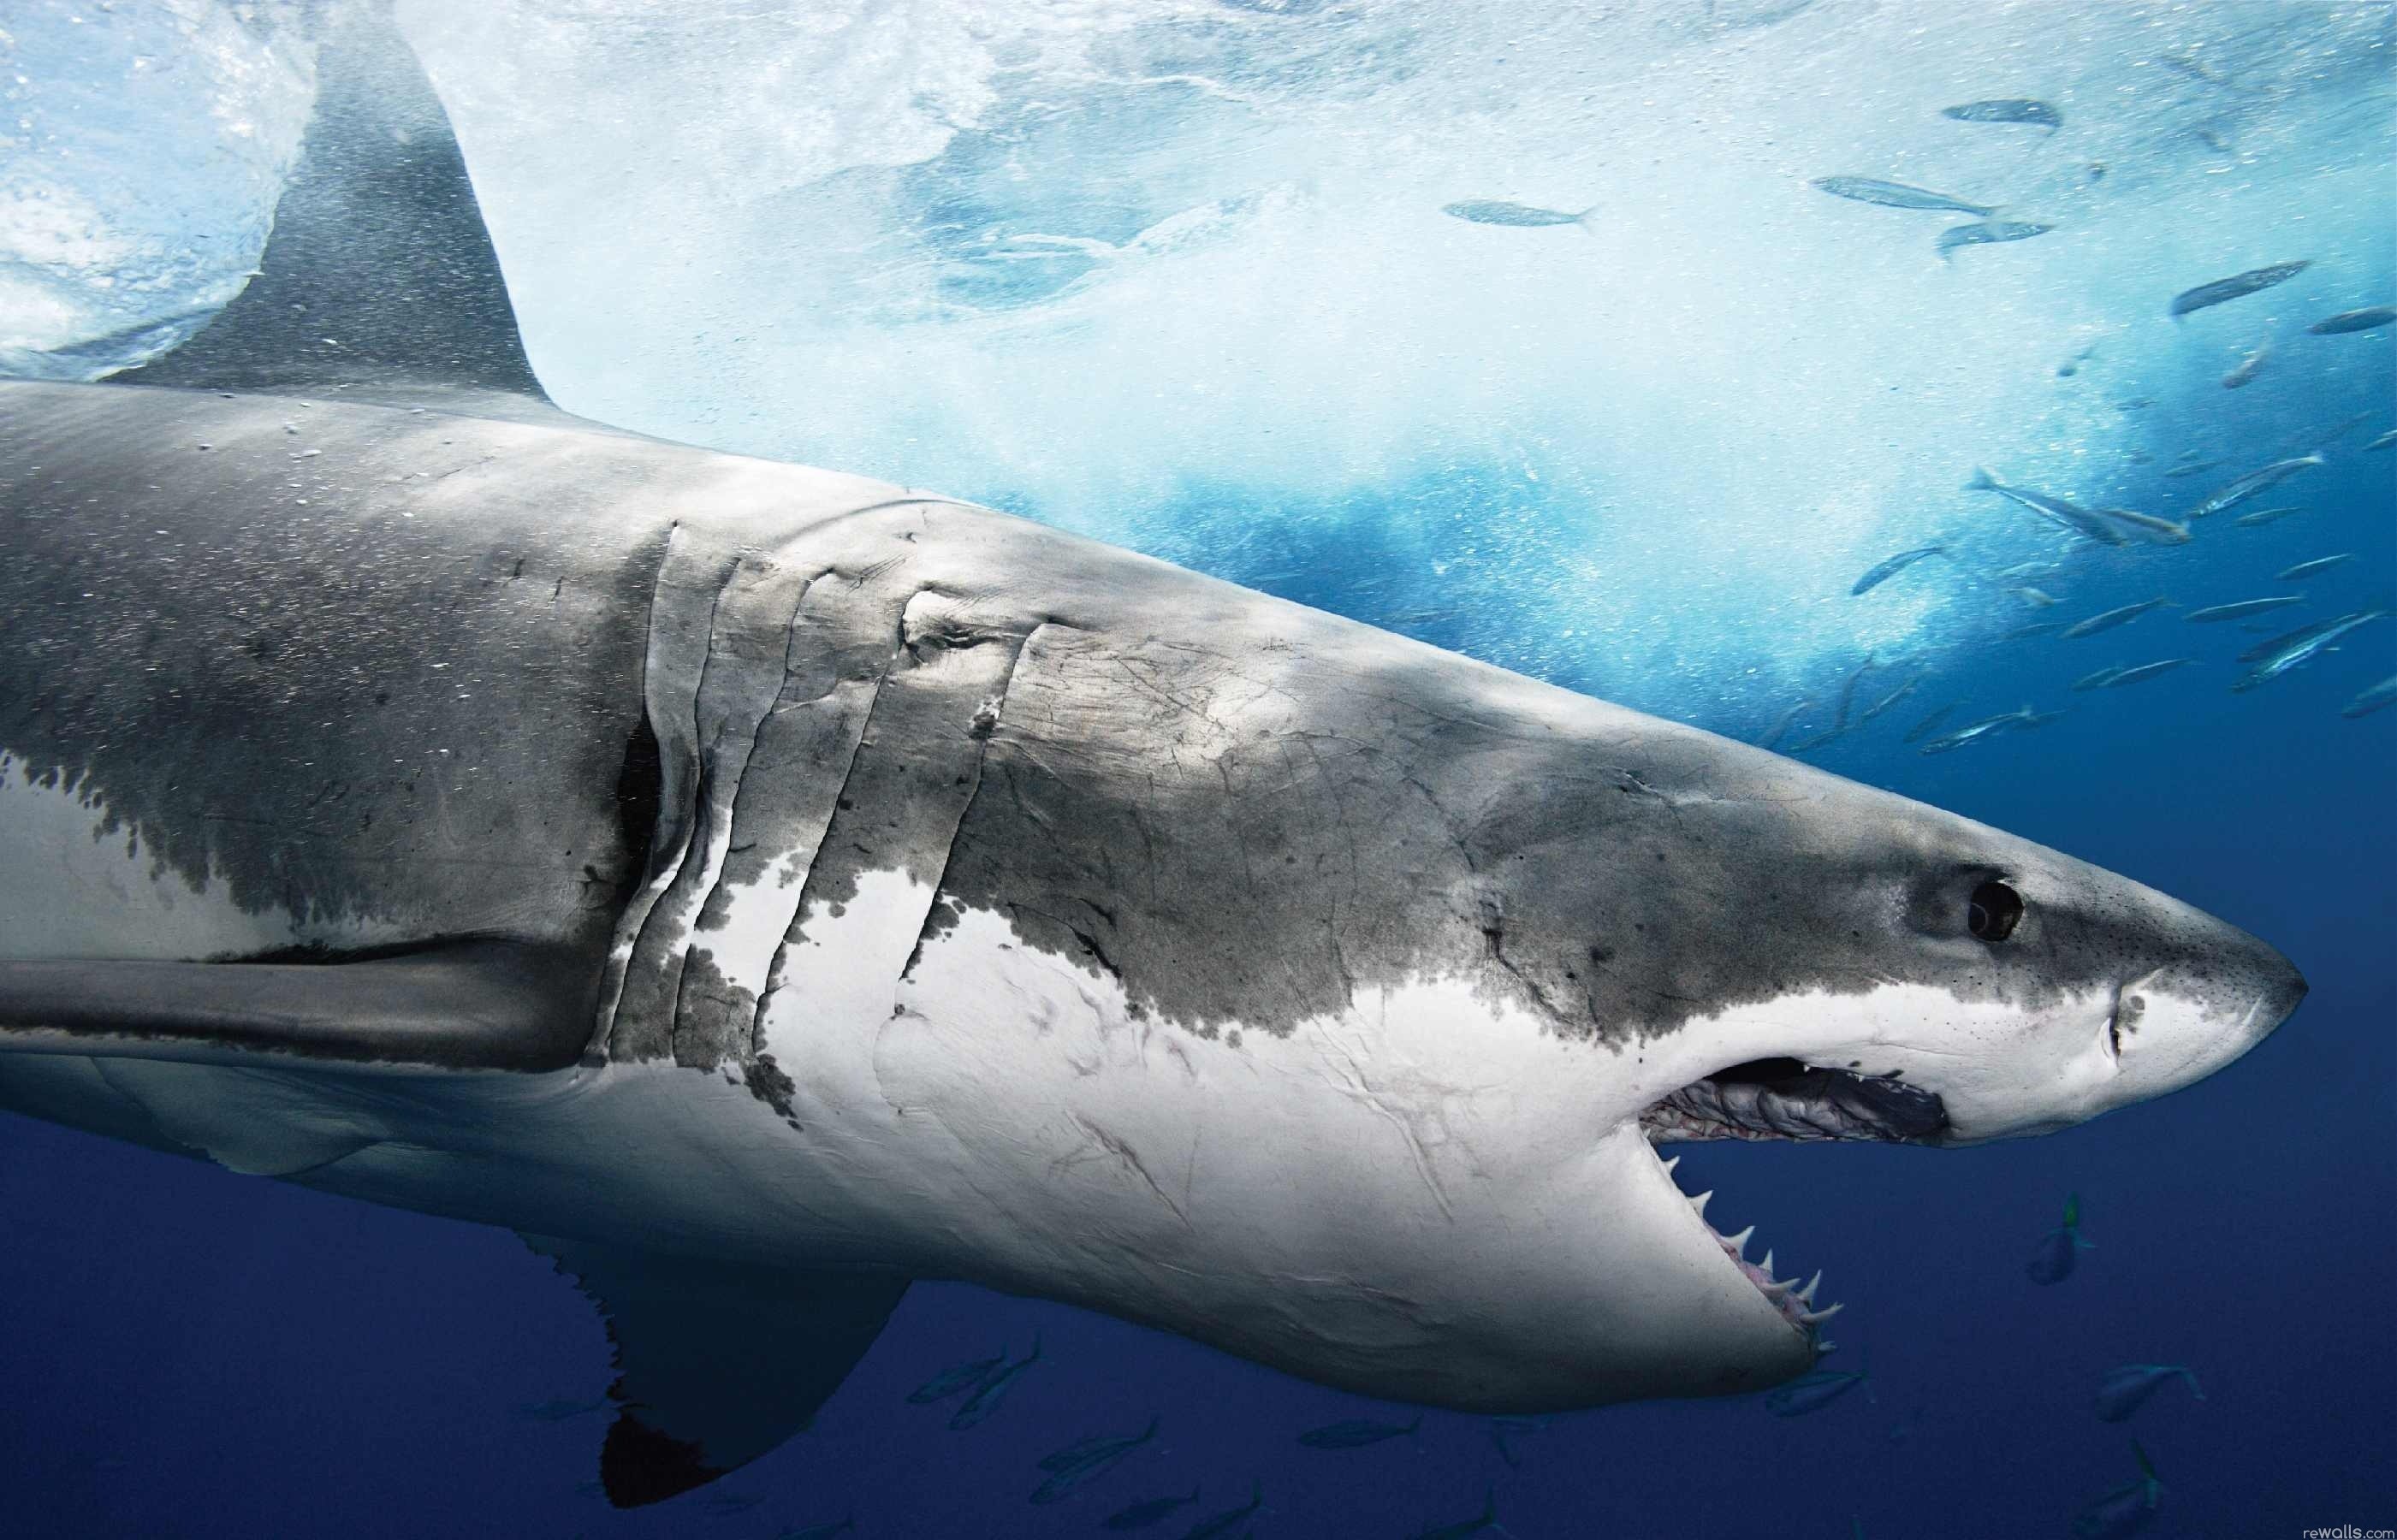 Hd Shark Wallpaper Wallpapertag Images, Photos, Reviews